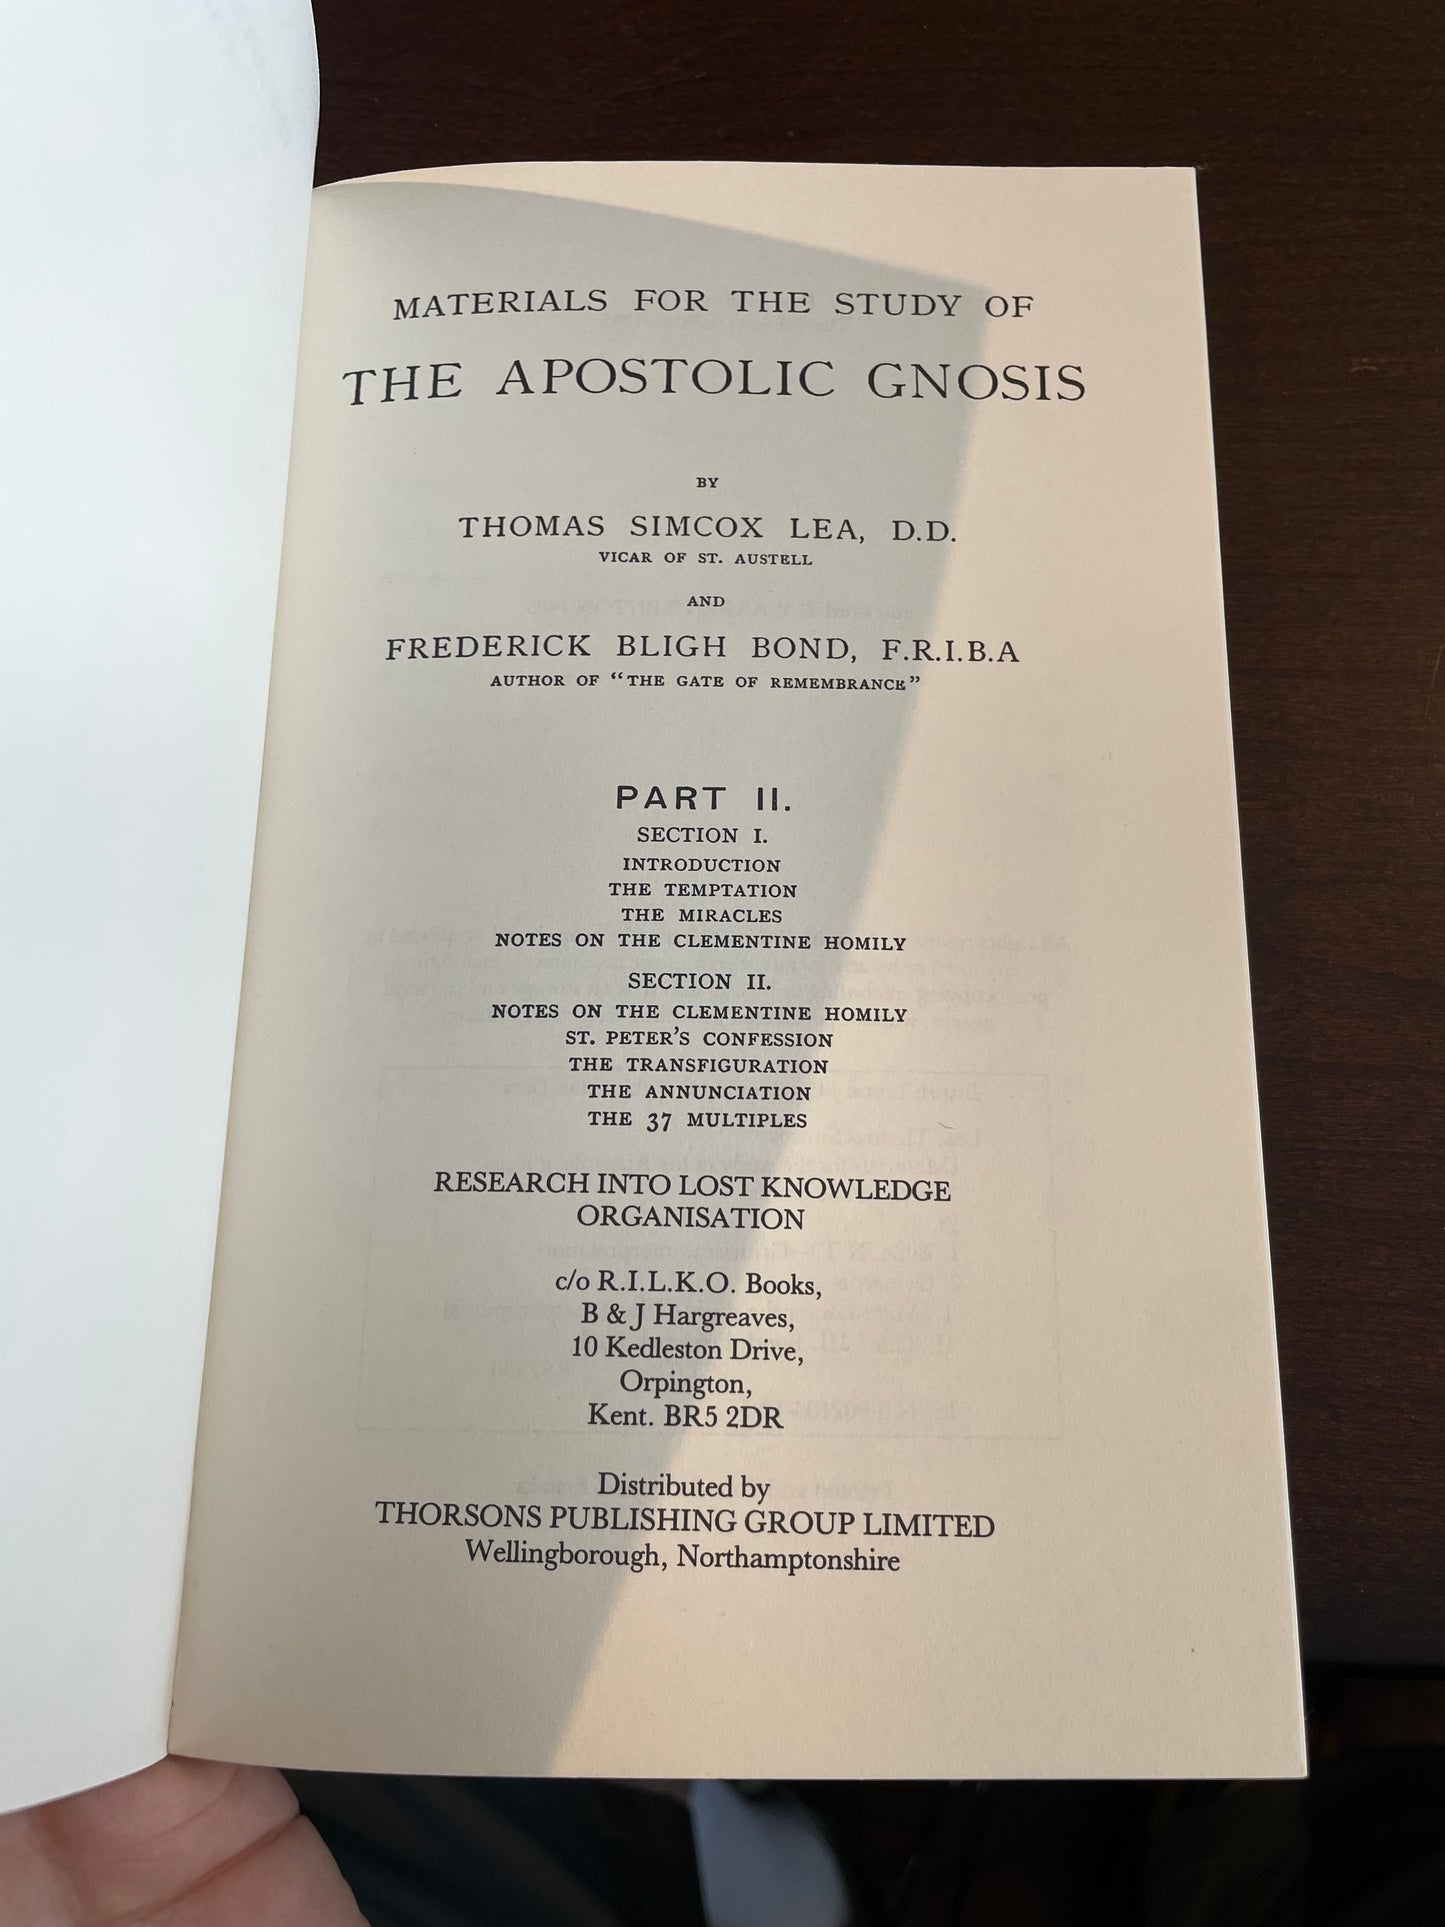 The Apostolic Gnosis